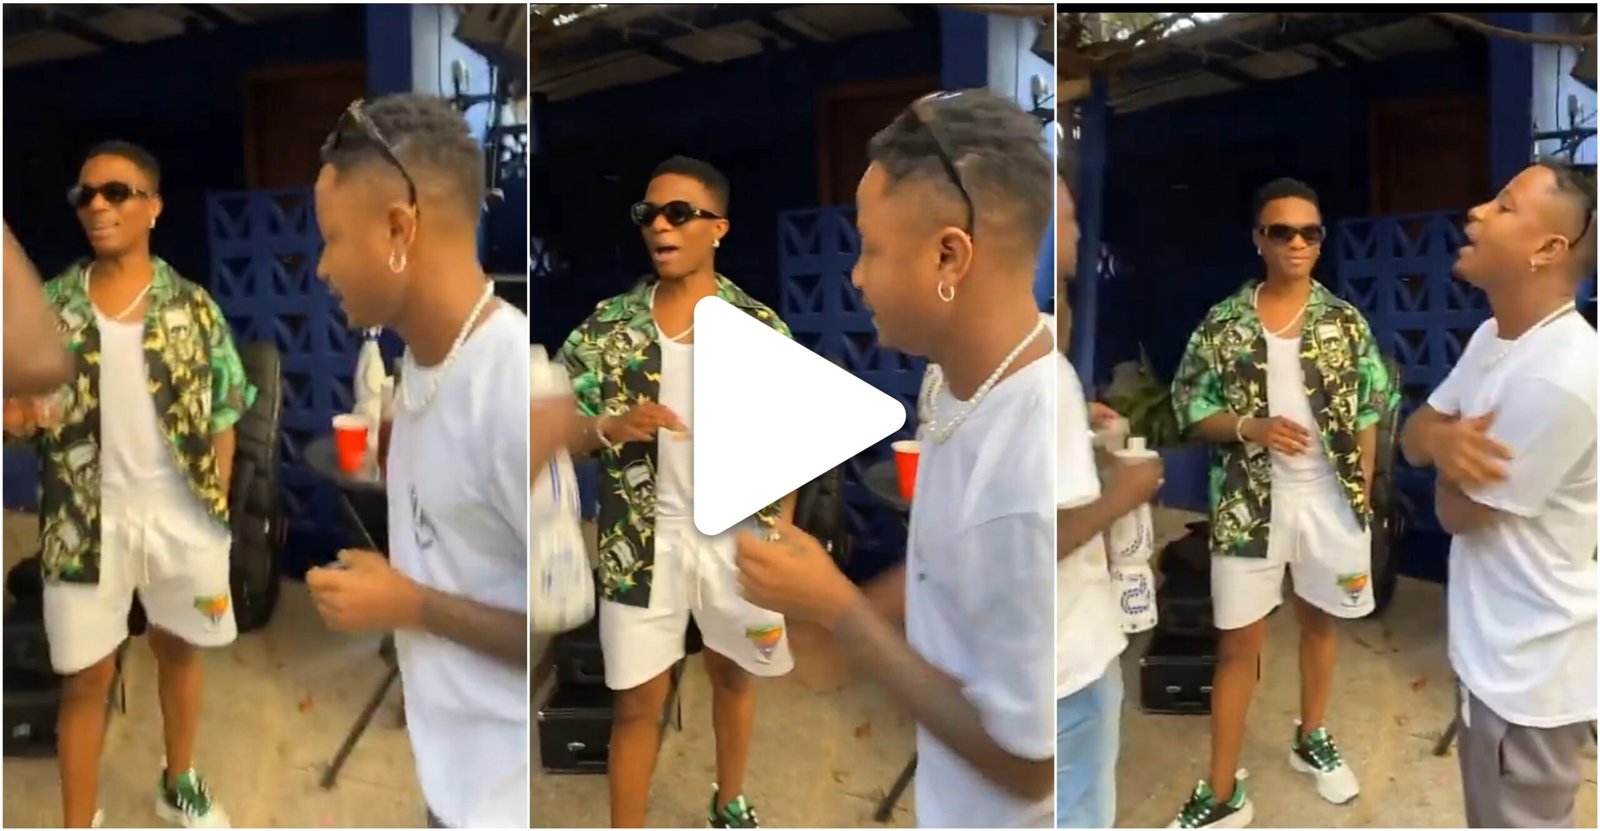 “Just two afrobeat baddmen vibing” – Kelvyn Boy links up with Wizkid in Nigeria